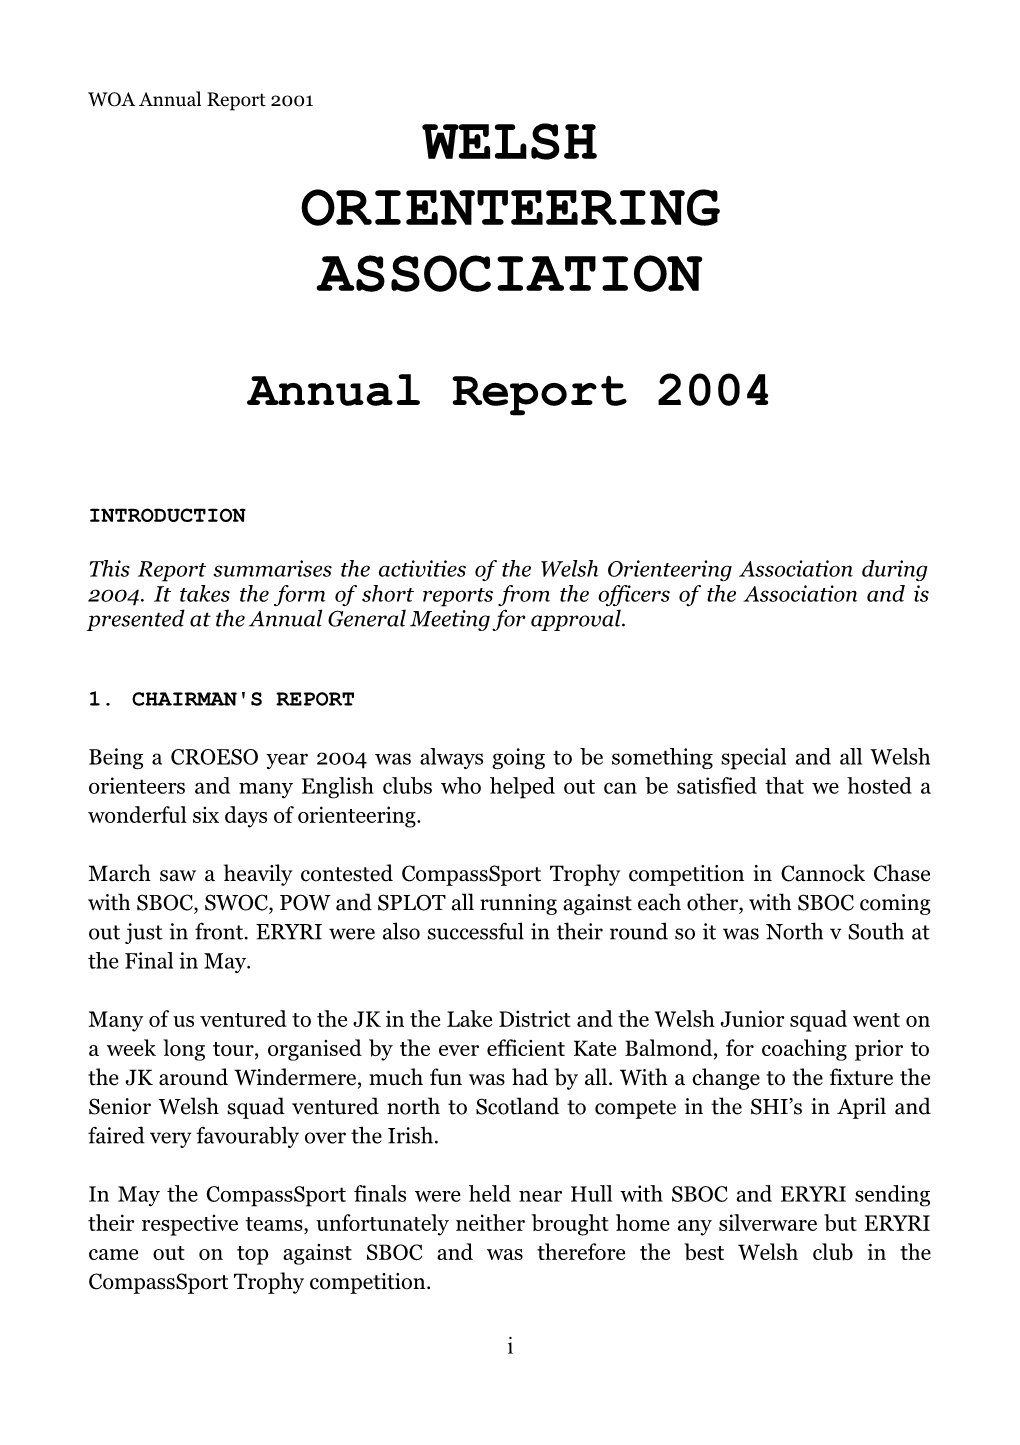 Annual Report 2004 s1